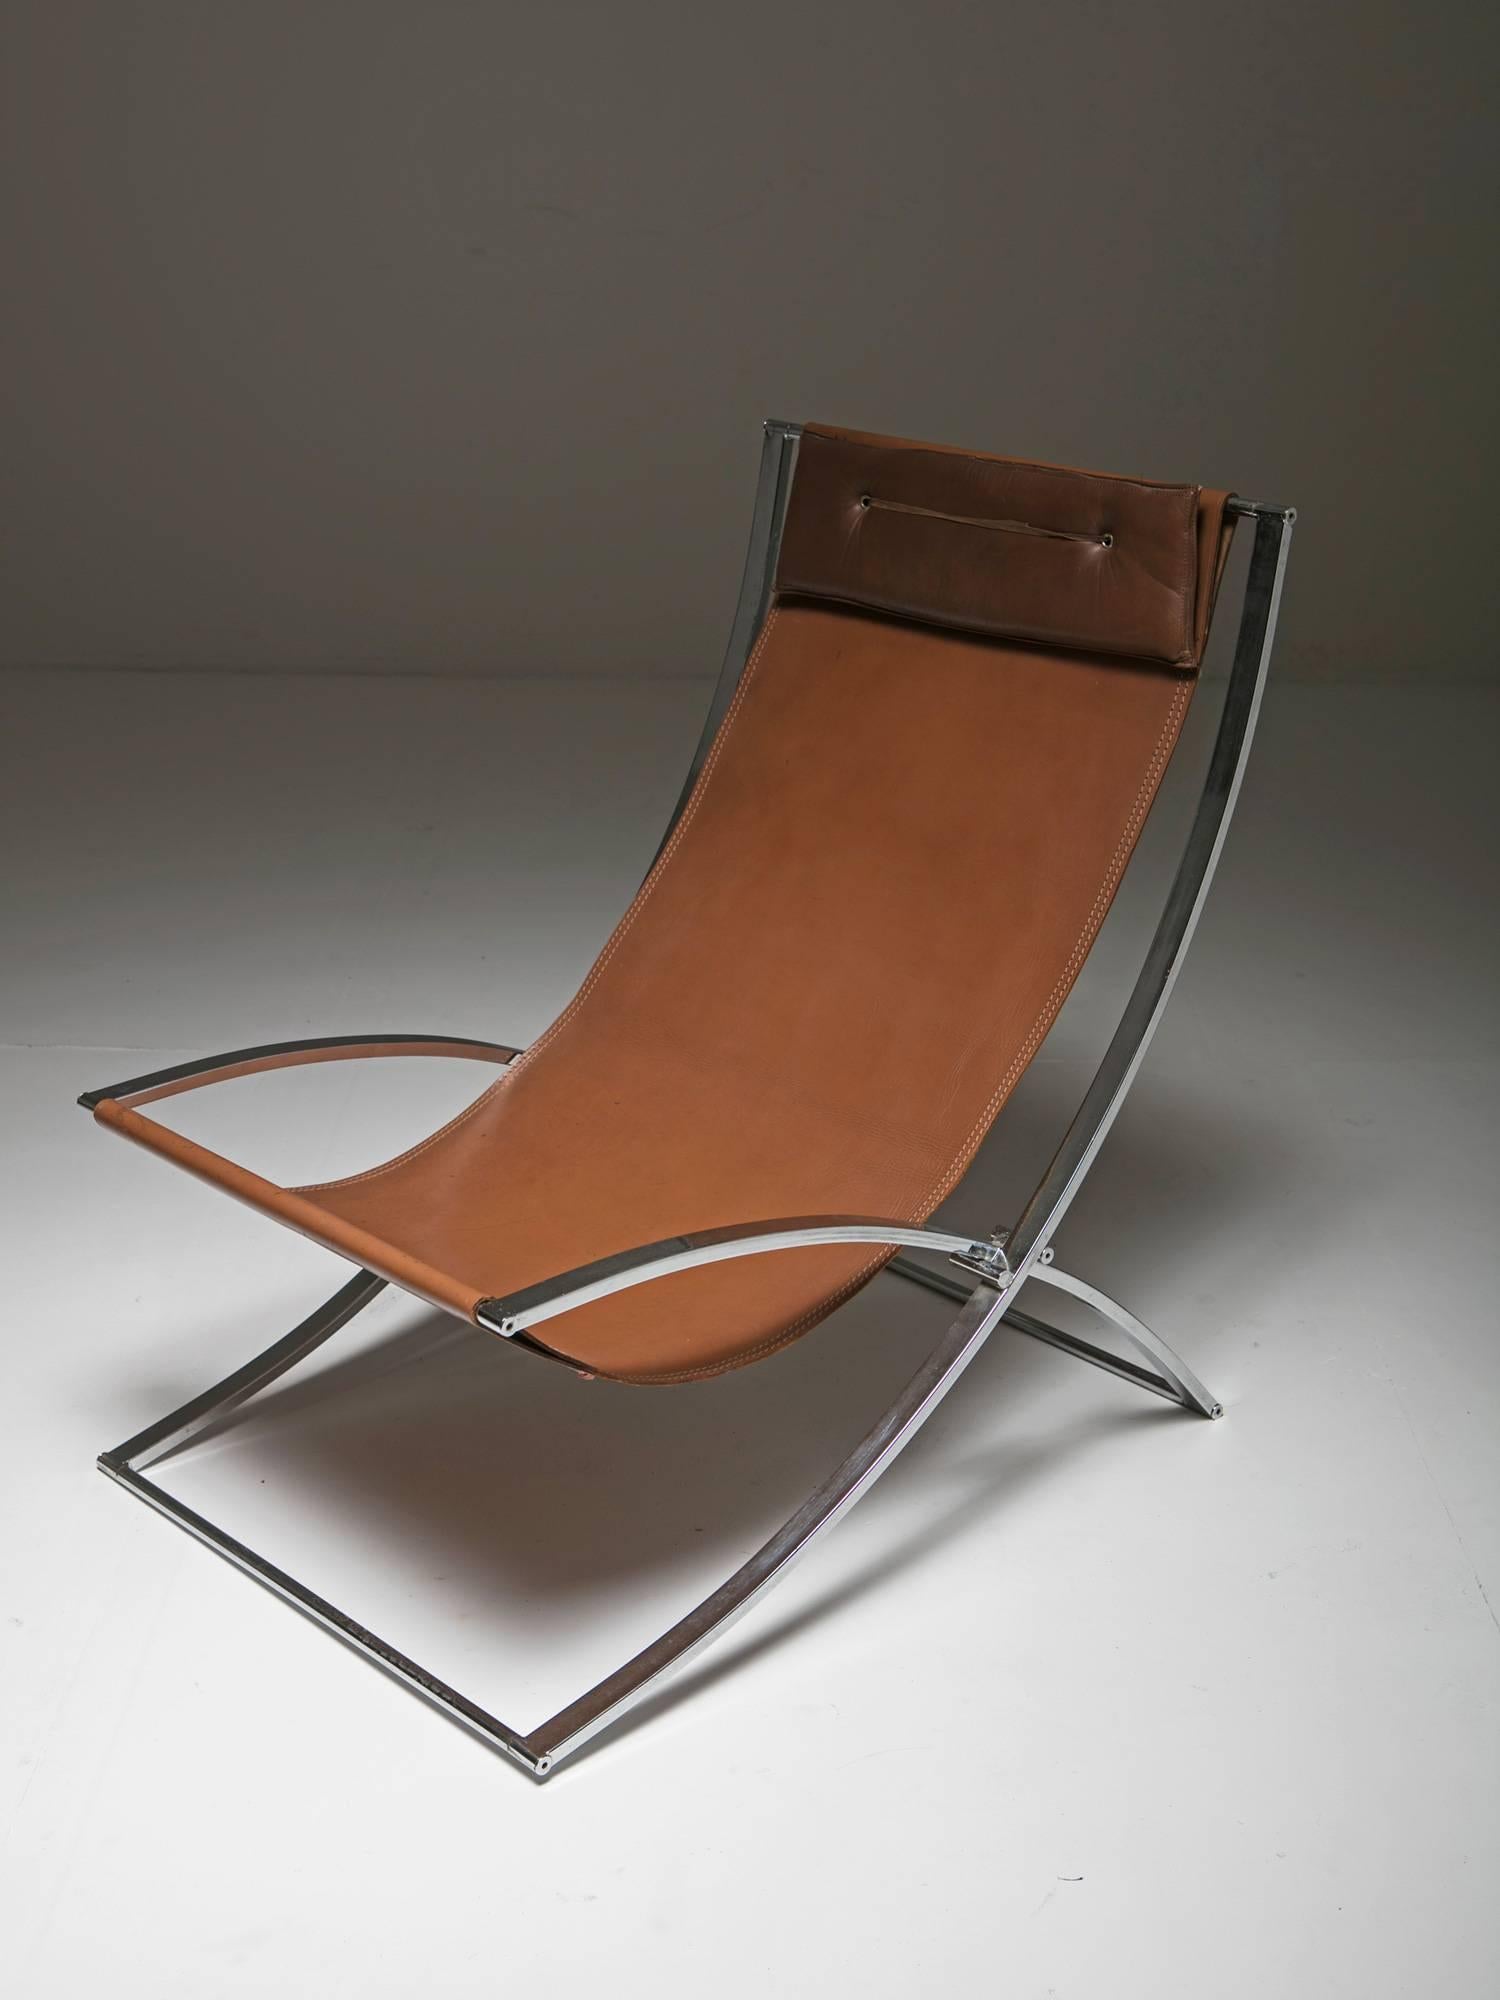 Ensemble de deux chaises longues pliantes de Marcello Cuneo pour Foldes.
Cadre chromé élégant et revêtement en cuir avec oreiller compact pour l'appui-tête.